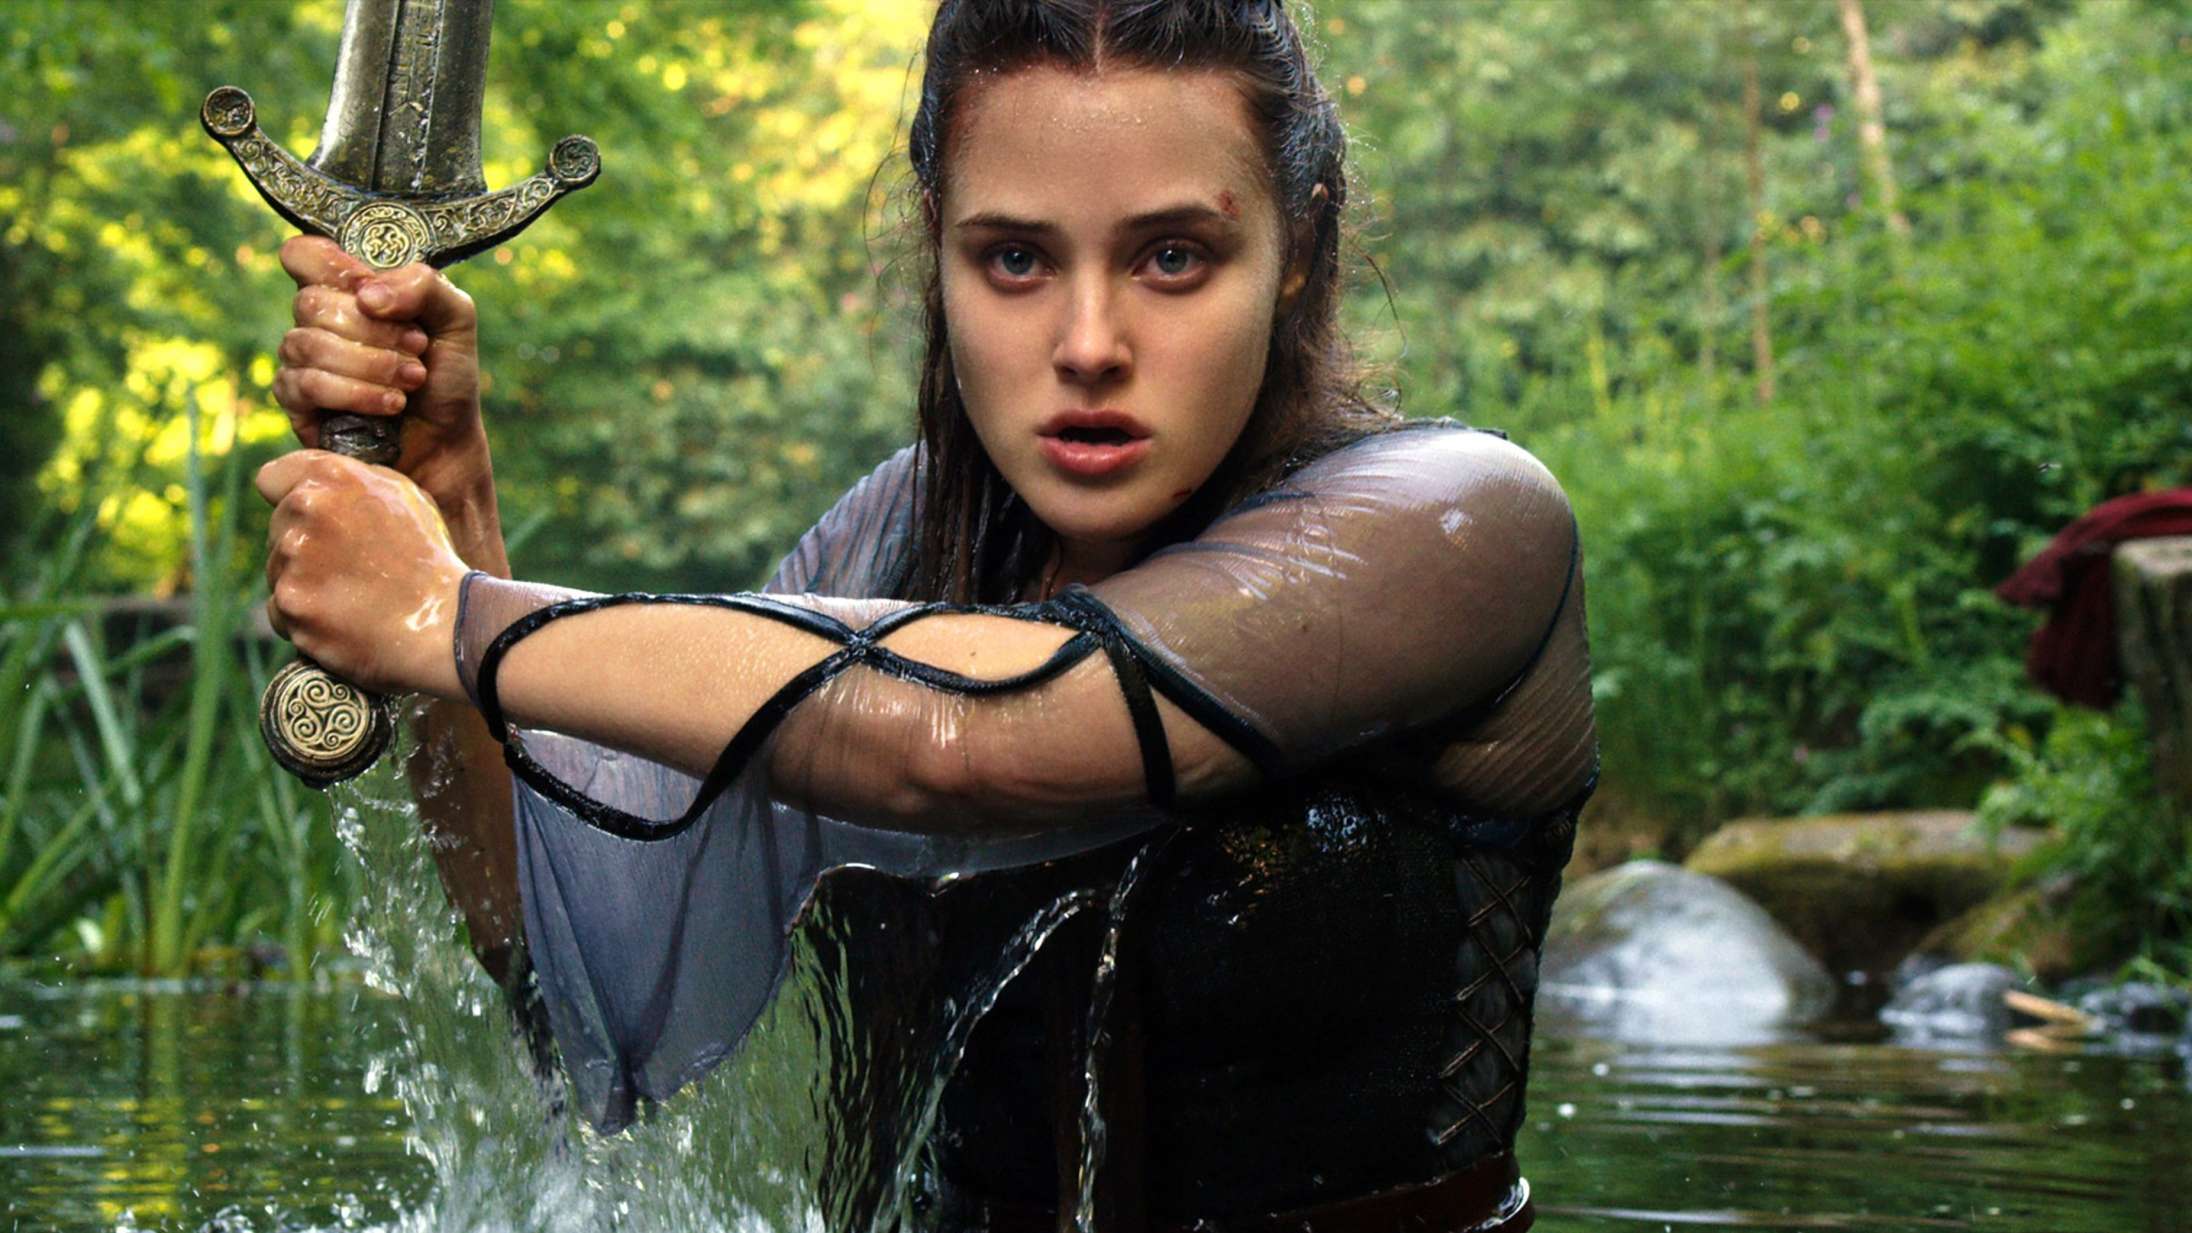 ’Cursed’: ’Game of Thrones’ møder ’Mortal Kombat’ i magisk fantasyserie på Netflix